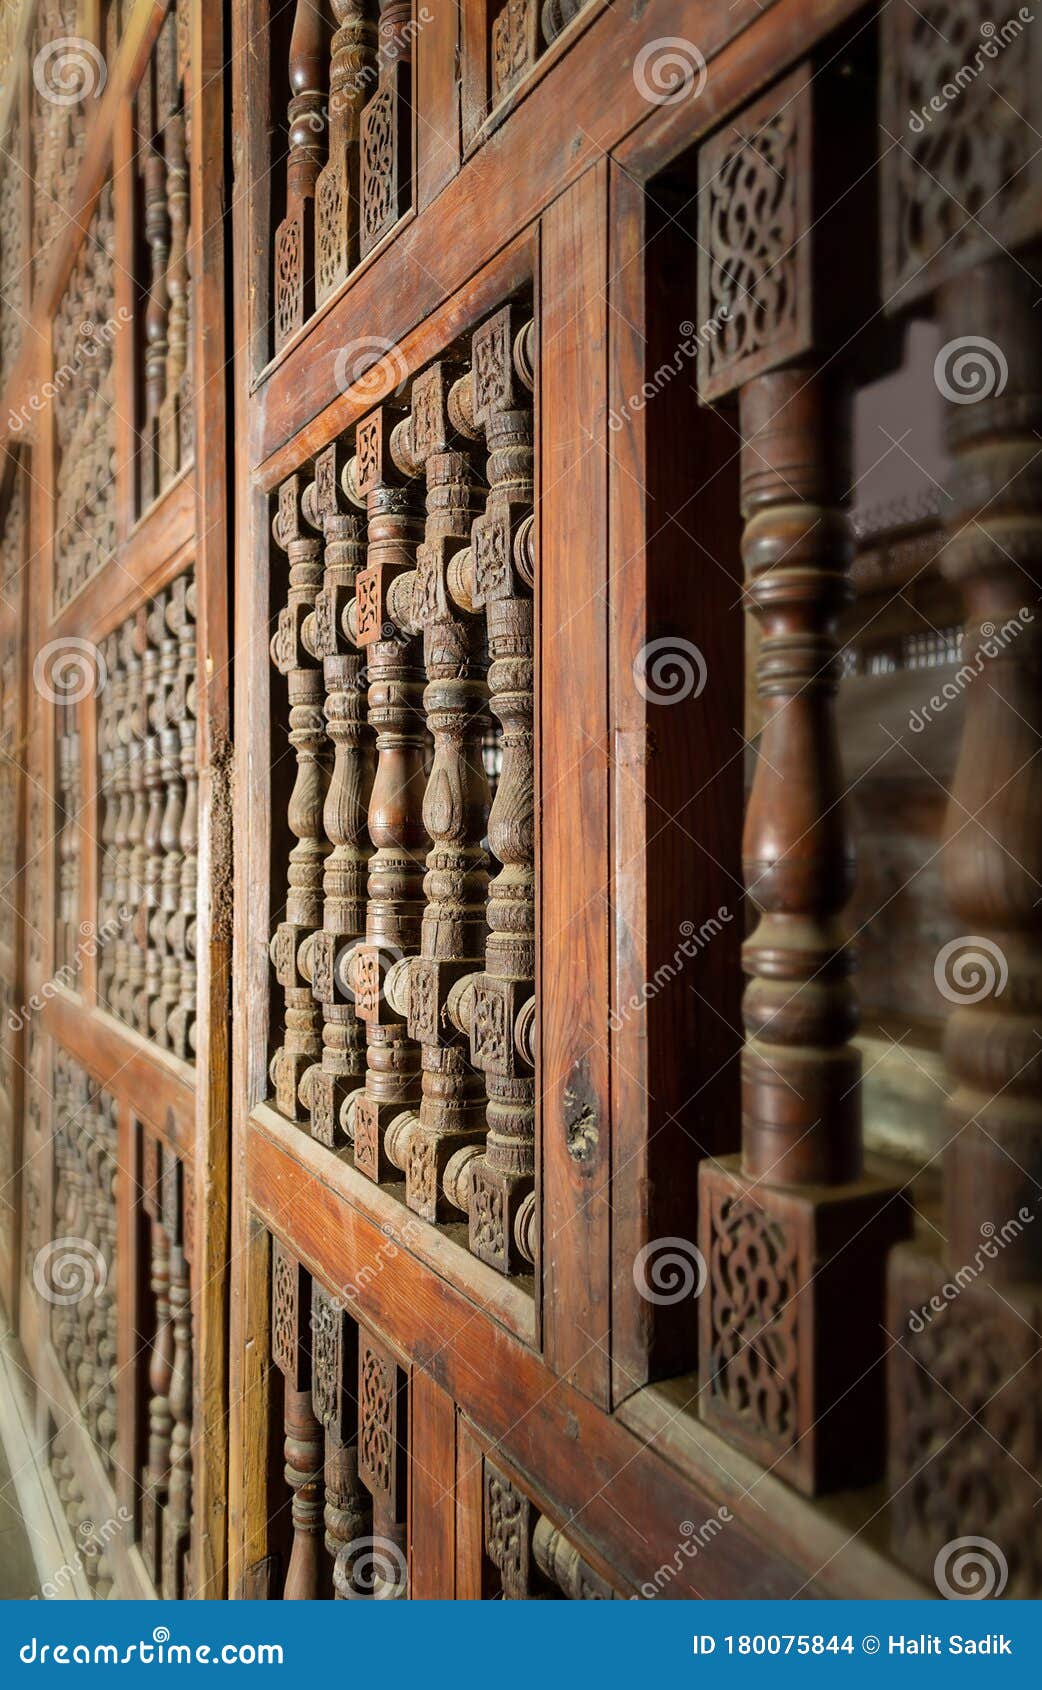 interleaved wooden ornate wall - mashrabiya -at abandoned building